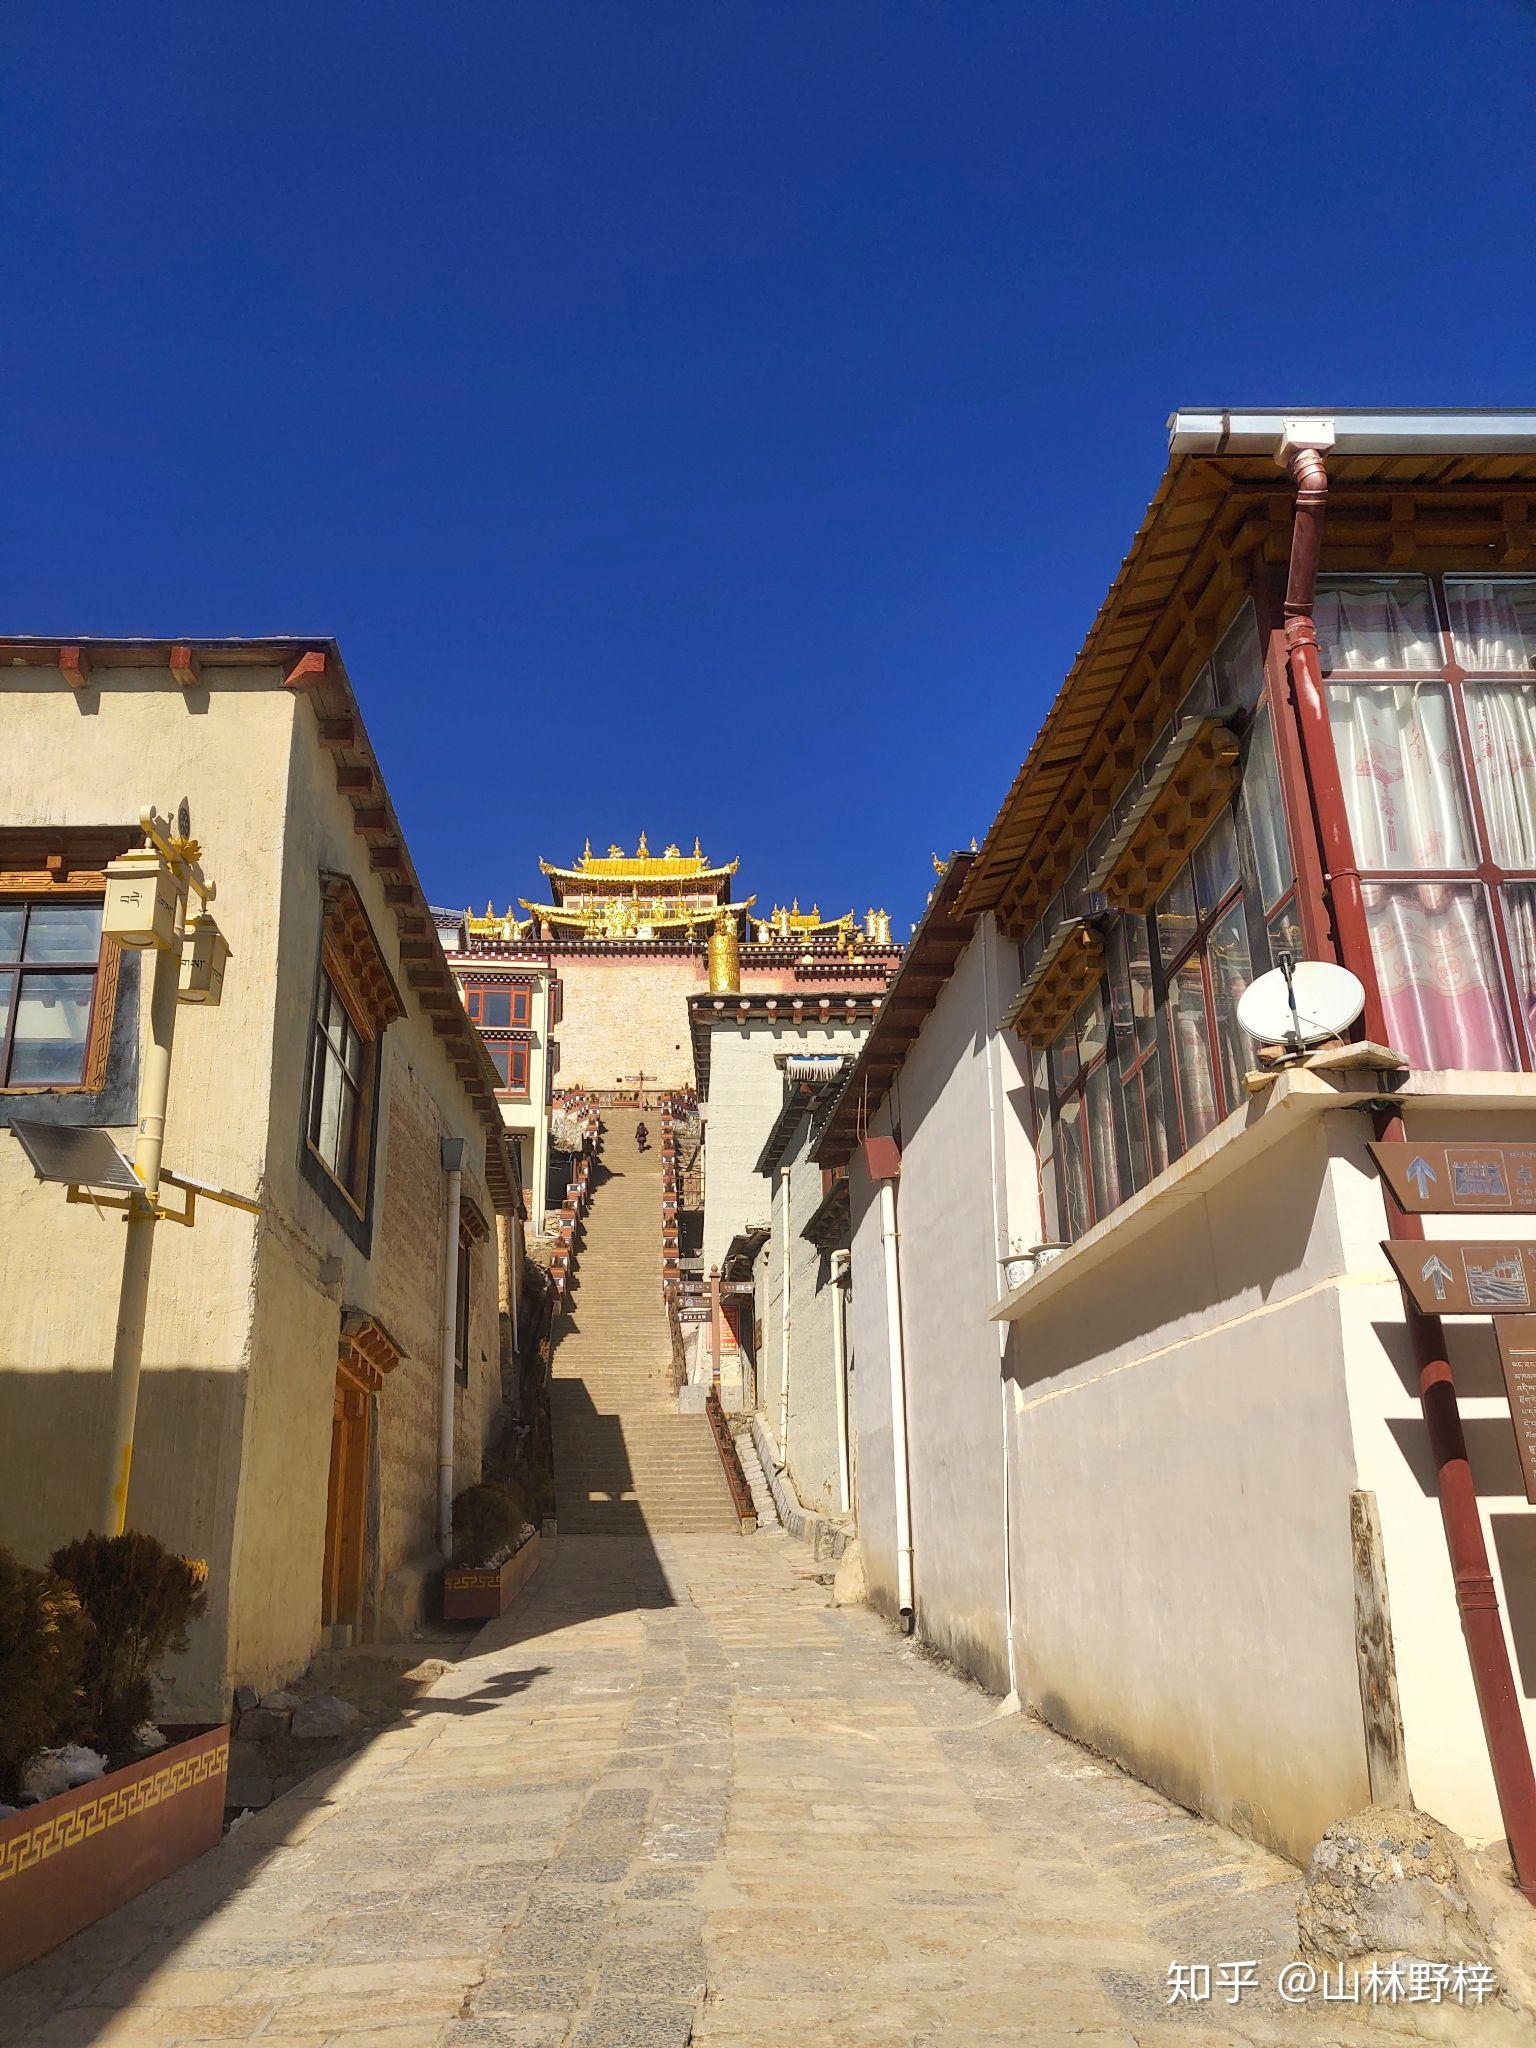 【高清图】噶丹·松赞林寺-中关村在线摄影论坛